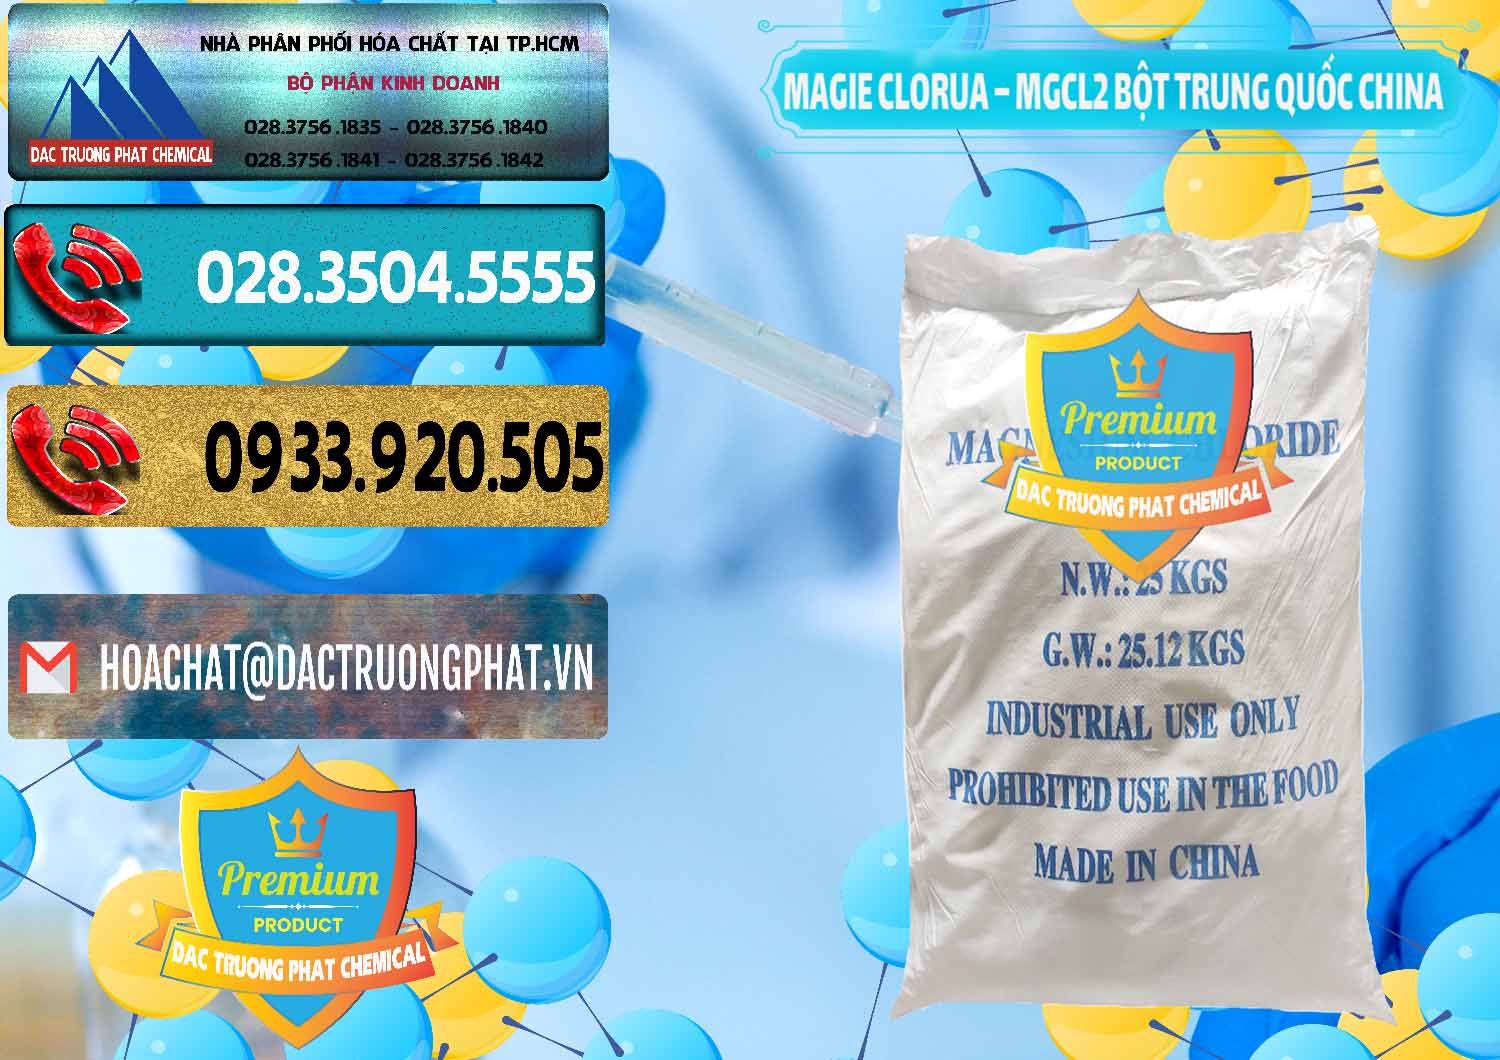 Nơi chuyên bán ( cung cấp ) Magie Clorua – MGCL2 96% Dạng Bột Bao Chữ Xanh Trung Quốc China - 0207 - Đơn vị chuyên bán _ phân phối hóa chất tại TP.HCM - hoachatdetnhuom.com